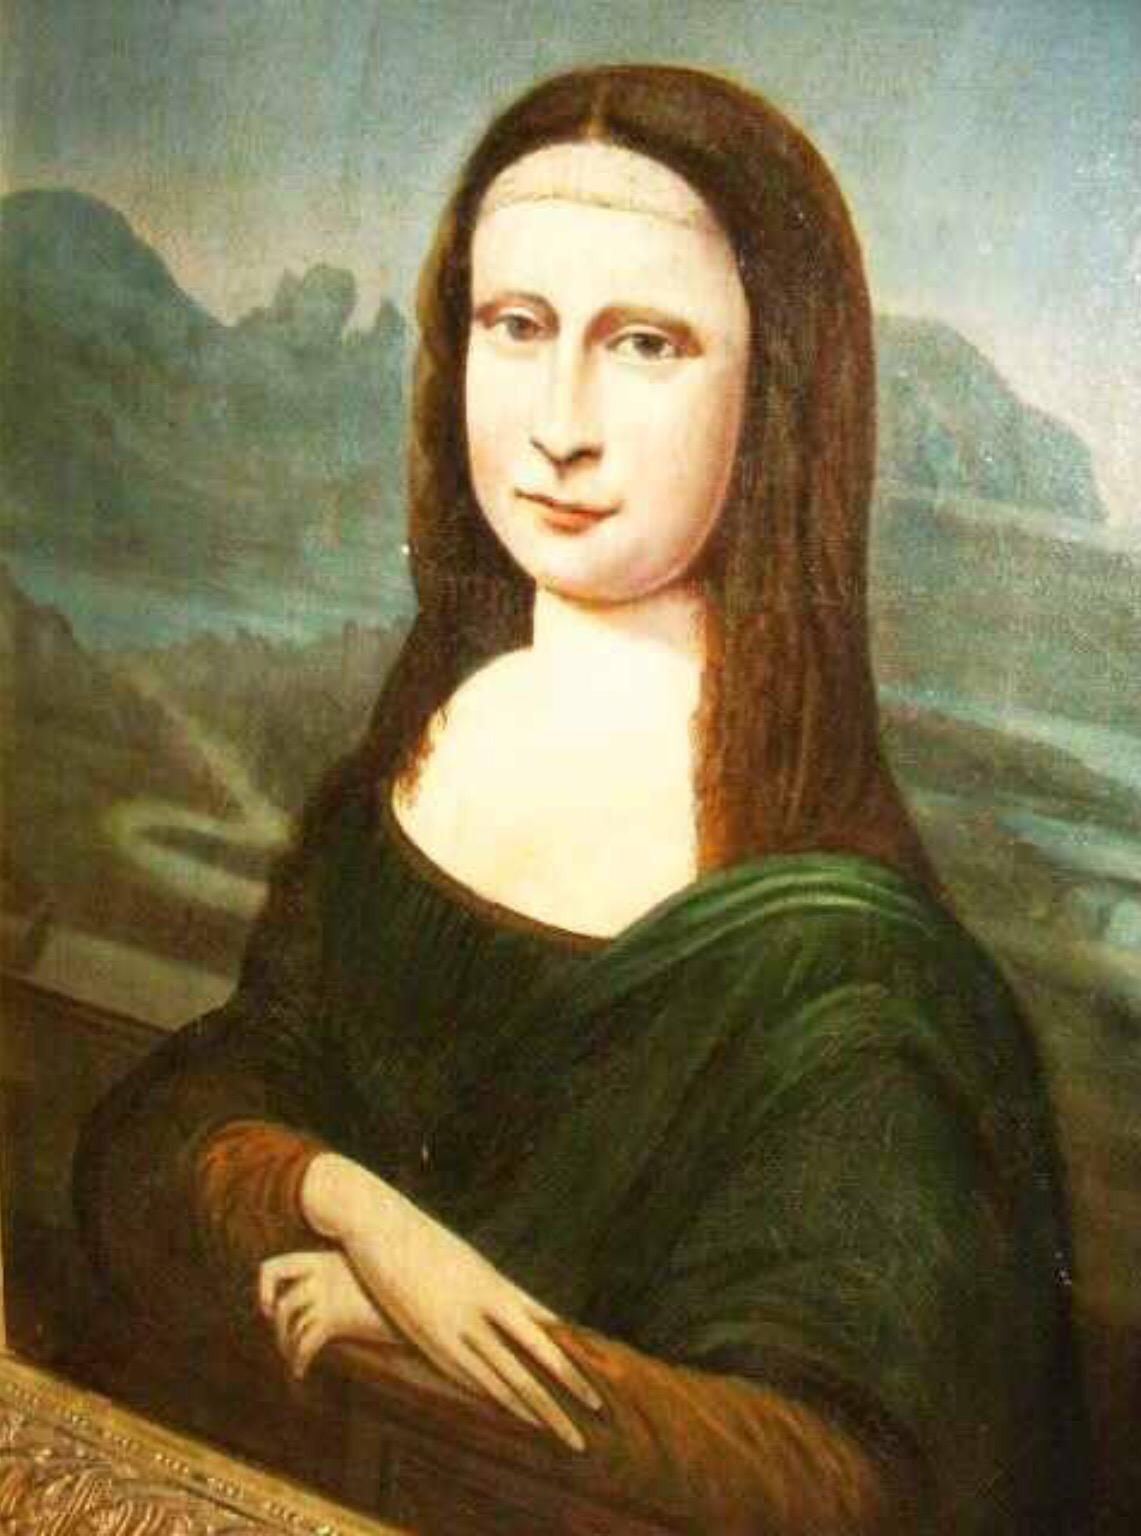 18thc Mona Lisa Oil Portrait Painting After The Original By Leonardo Da Vinci For Sale 1